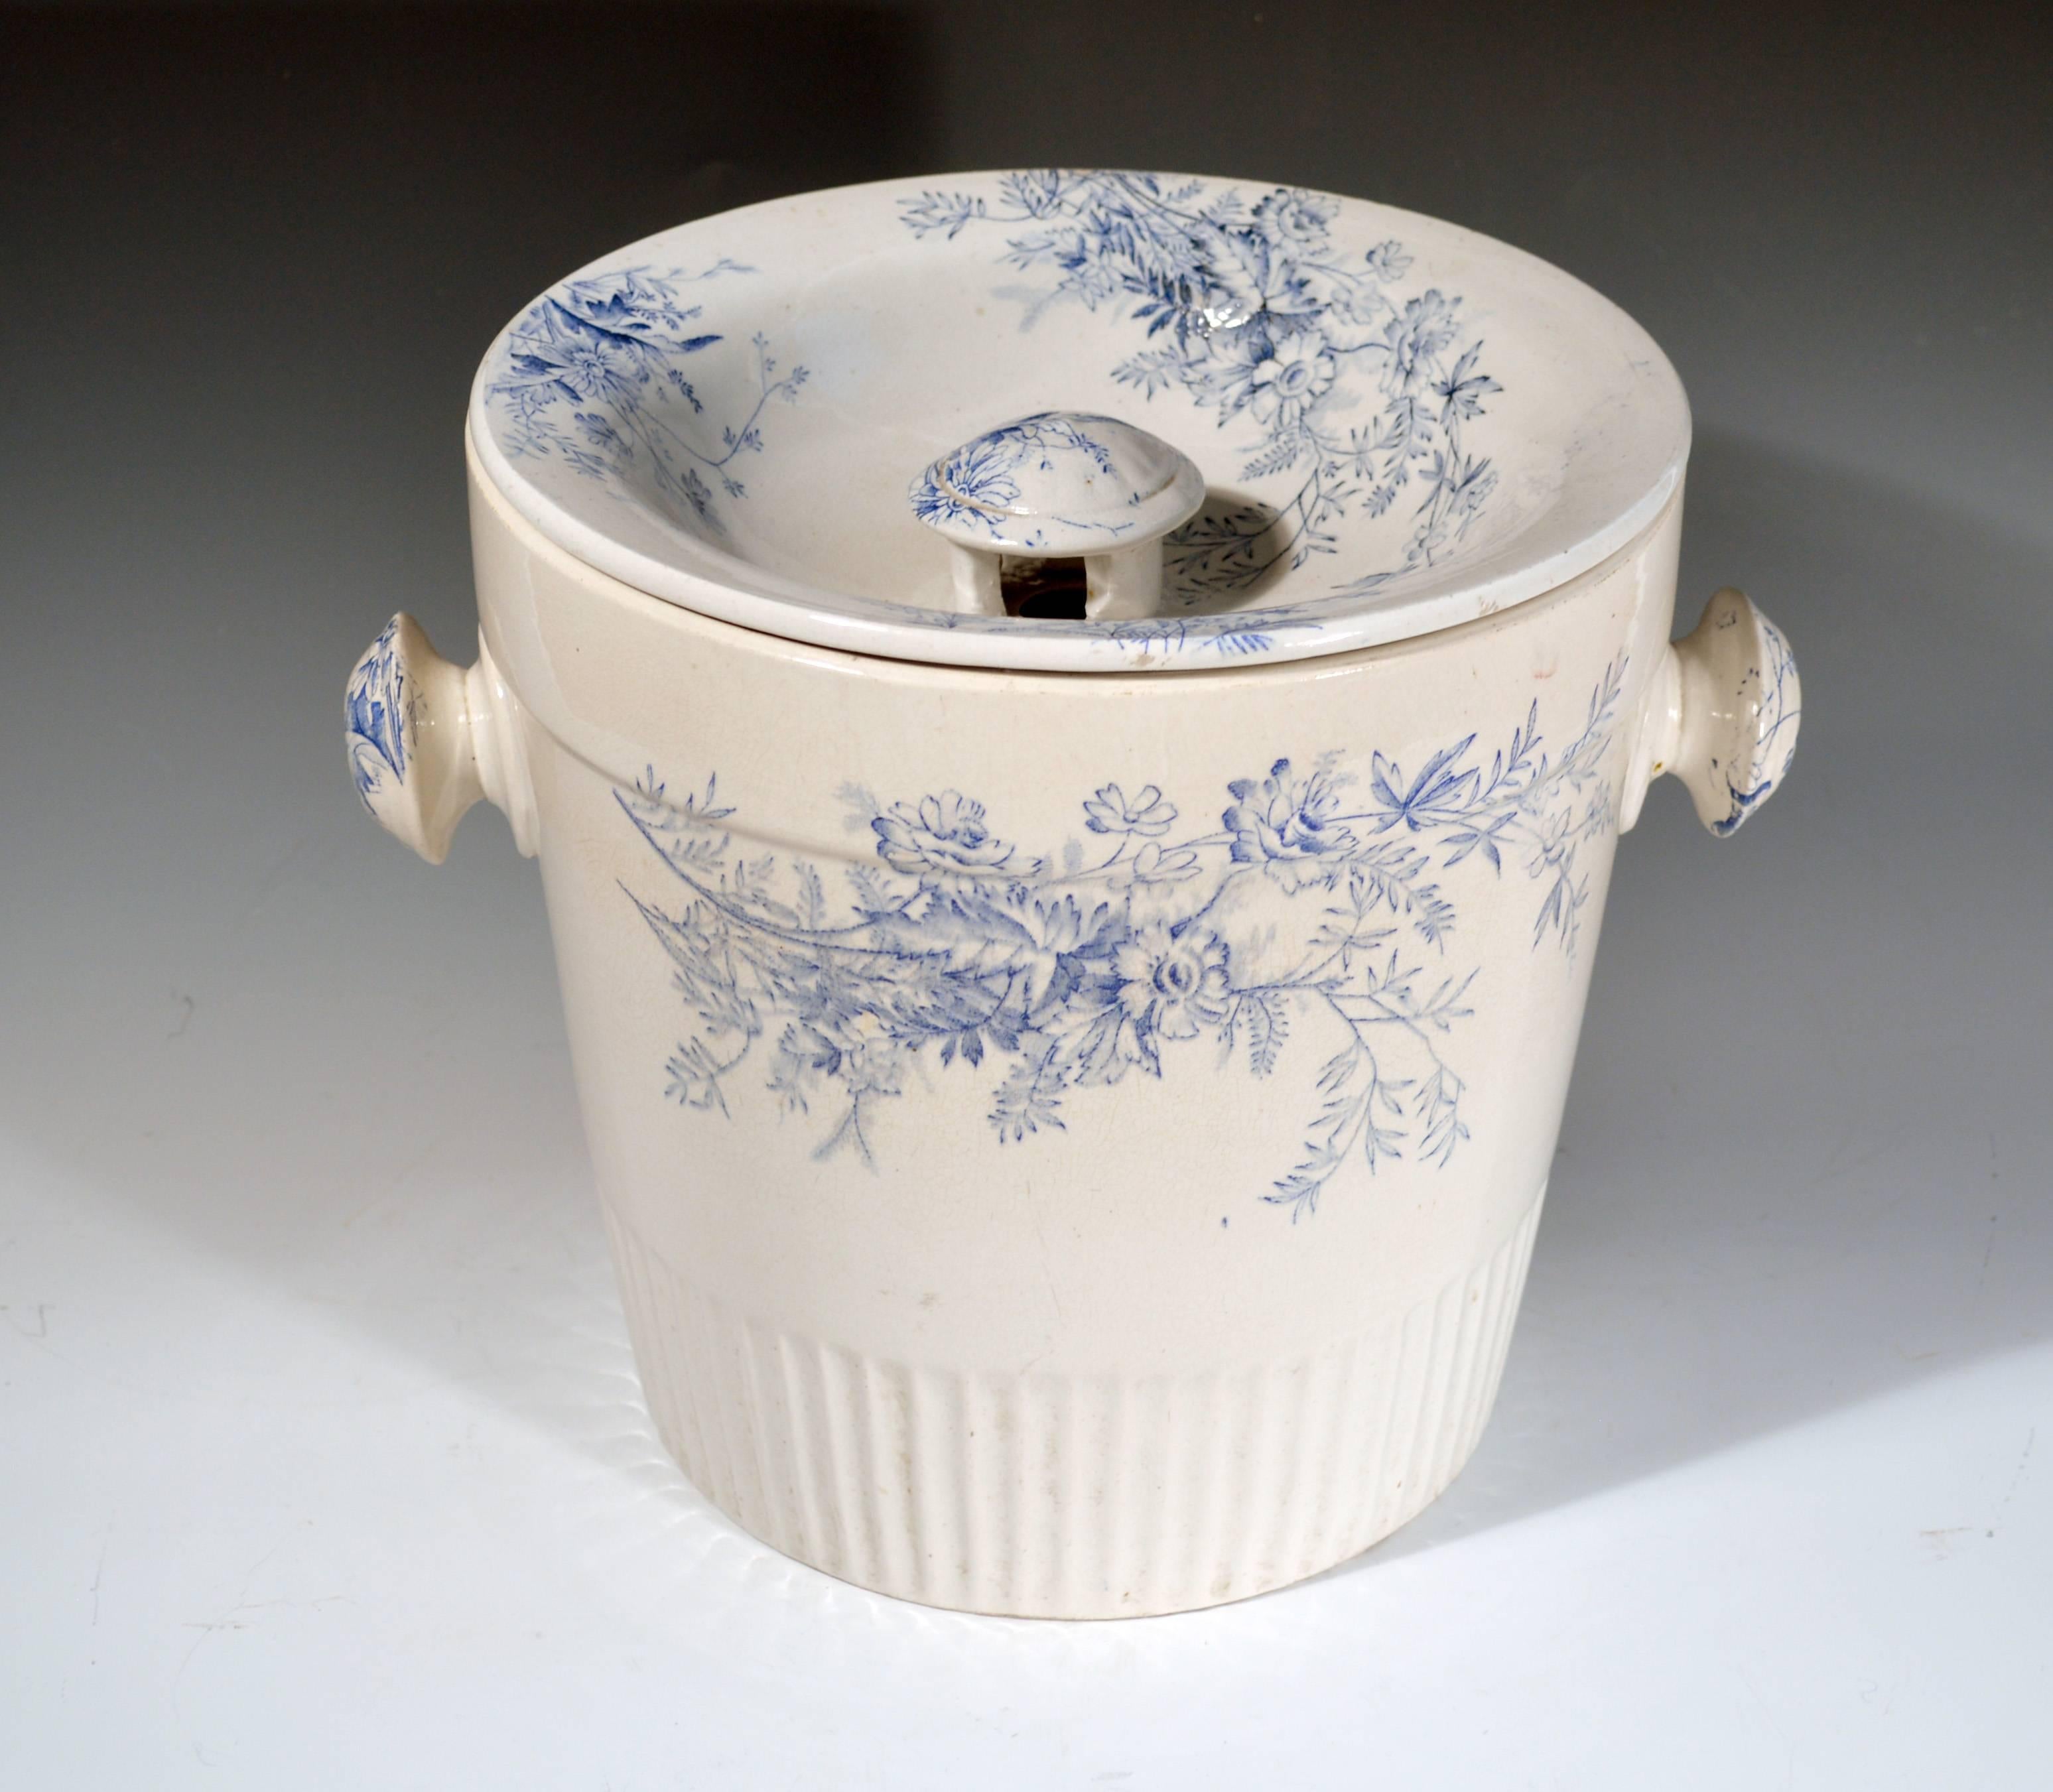 Pil et couvercle en poterie à motifs floraux bleus et blancs,
Poterie Vera,
vers 1900-1930.

Le seau cylindrique avec des poignées extérieures en forme de bouton a une section inférieure cannelée et un motif bleu et blanc imprimé sur chaque